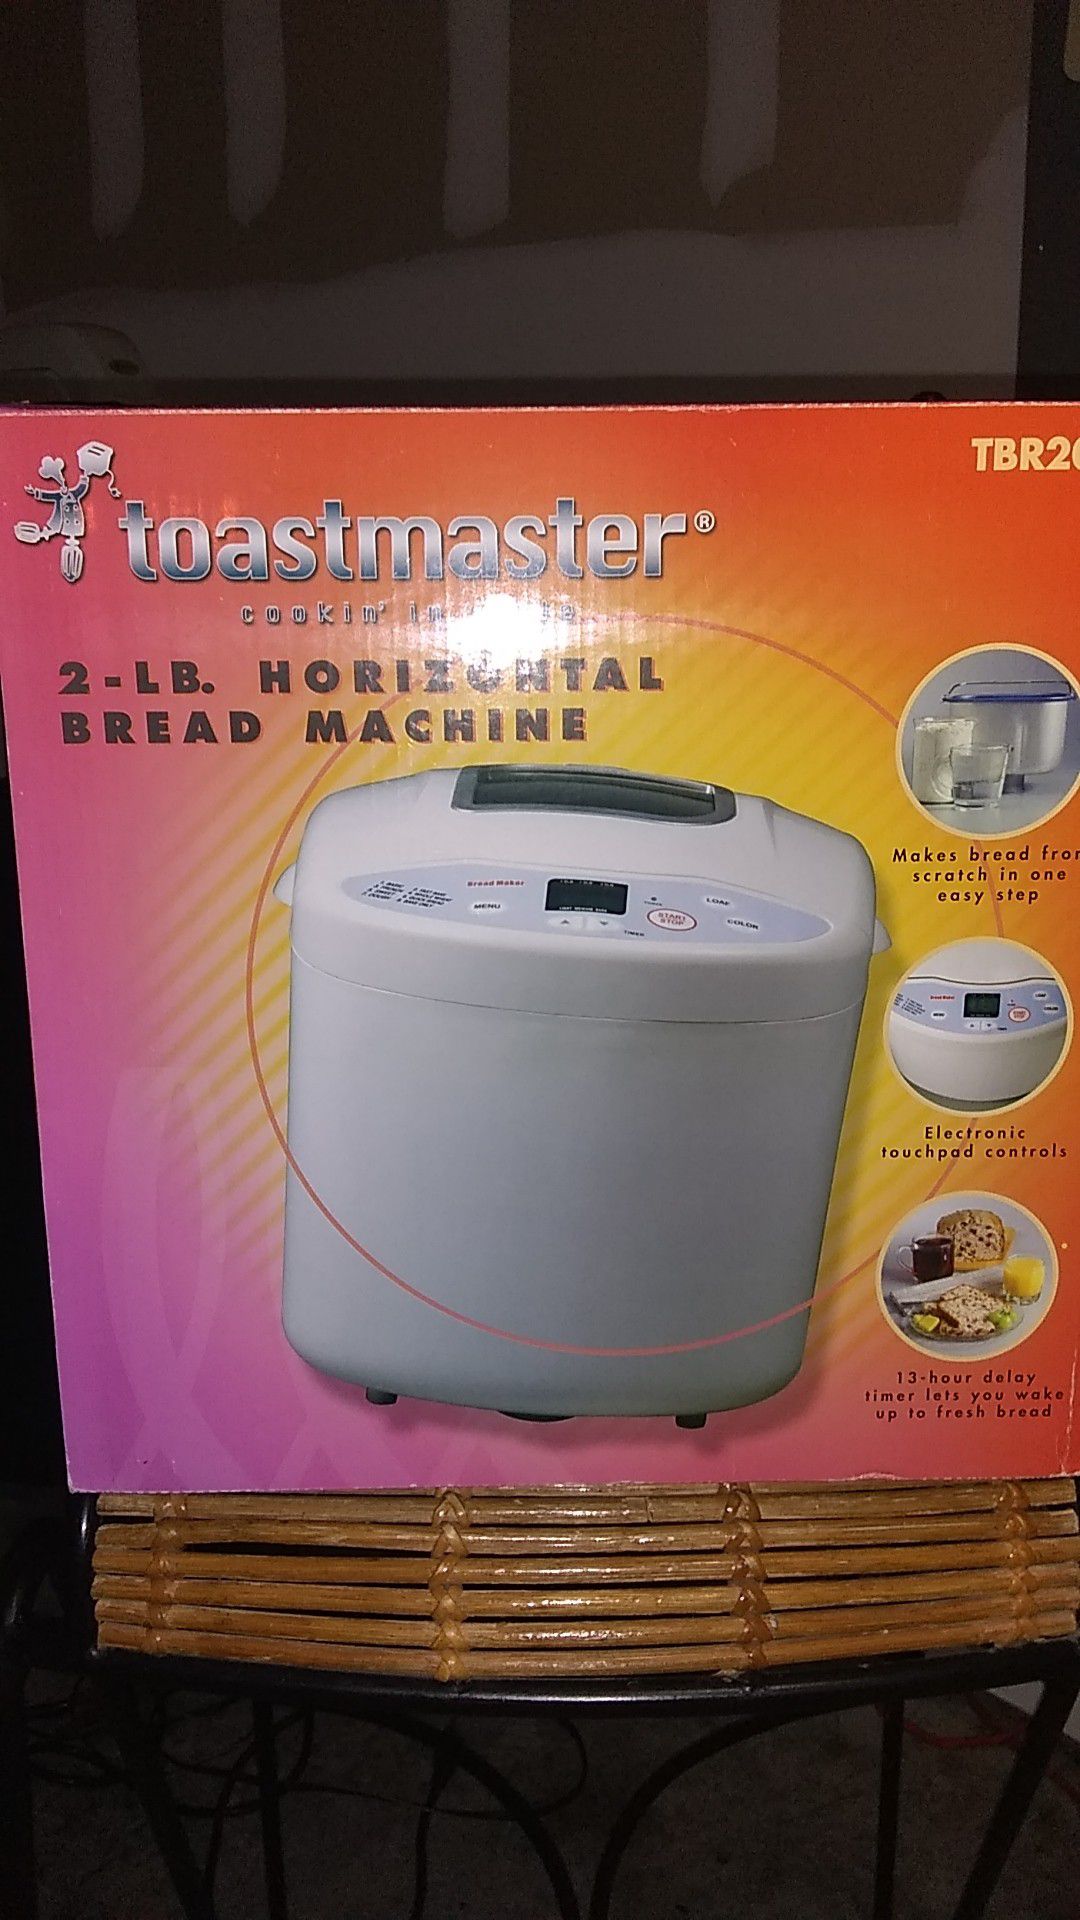 Toastmaster bread maker